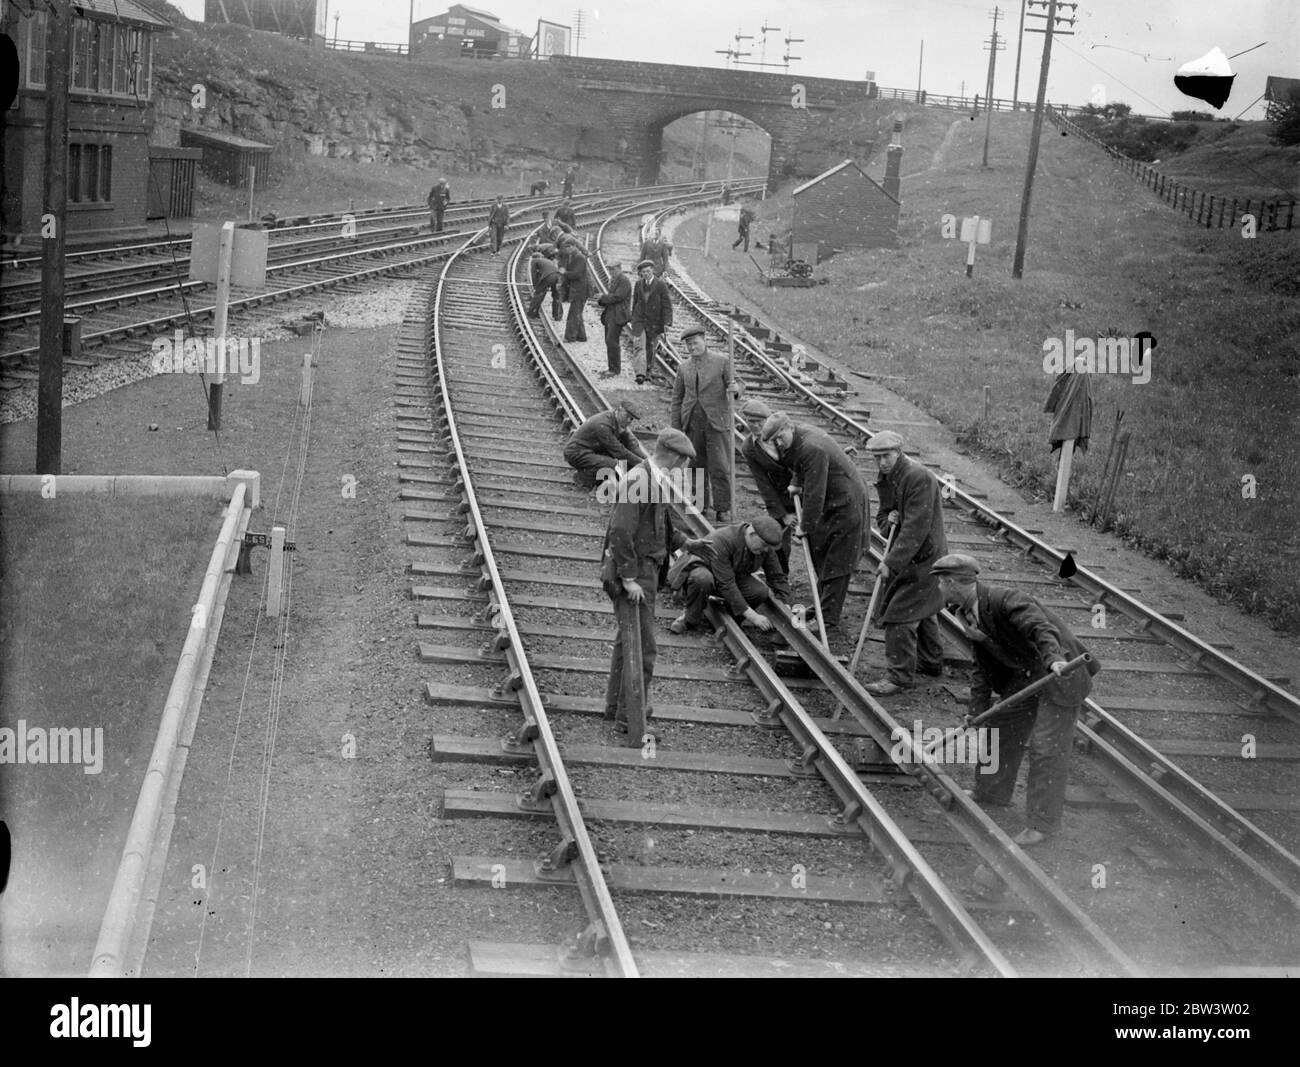 Cinquecento uomini relay 80 miglia di ferrovia in quattro giorni come LNER fare grande cambiamento su Tyneside . Cinquecento uomini sono impegnati nei pressi di Newcastle su uno dei lavori più complessi ad alta velocità svolti in Gran Bretagna per qualche tempo . Ottanta miglia di binario conduttore in acciaio vengono ripresi e rilanciati in quattro giorni . Per conformarsi agli standard moderni, la guida del conduttore per tutta la lunghezza delle linee elettrificate LNER su Tyneside viene presa e spostata di 3 1/4 pollici più vicino alla guida di scorrimento . Cinquantamila isolatori devono essere rimossi e l'insieme dei cavi di continuità richiedono Foto Stock